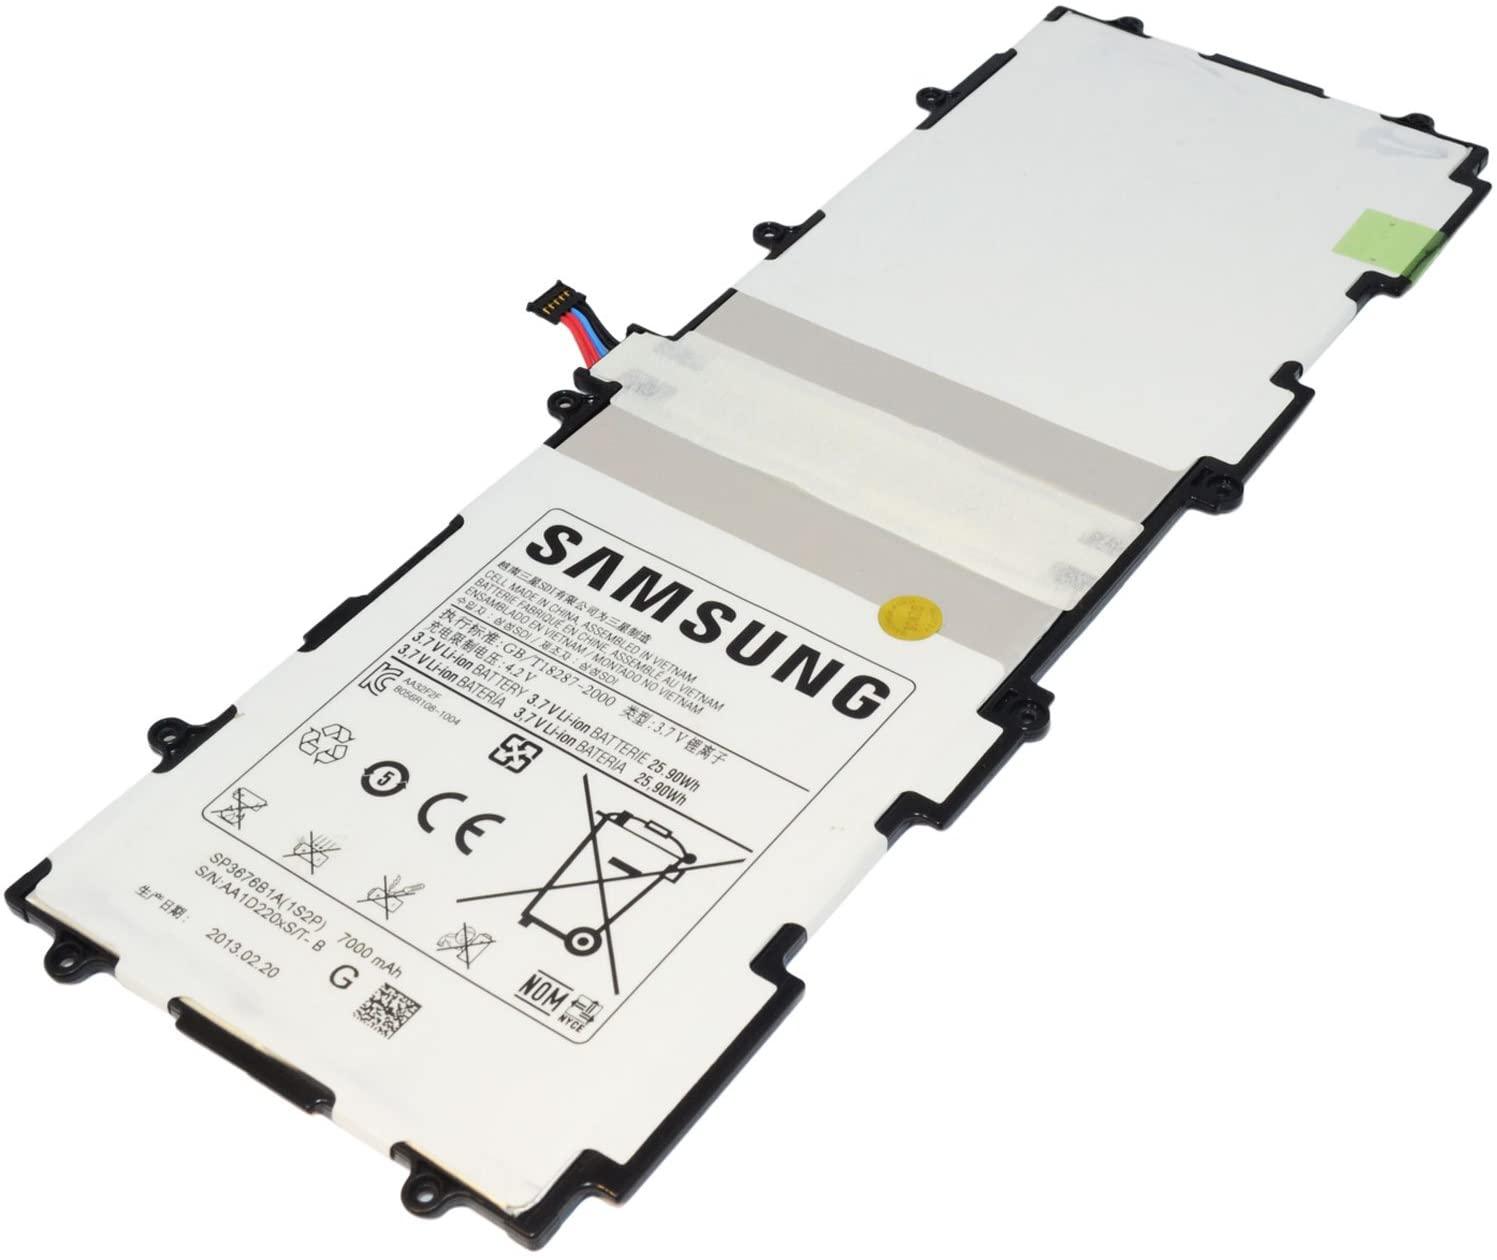 Samsung Galaxy Note 10.1 Tab 2 P5100 P5110 P7500 P7510 N8000 N8010 SP3676B1A(1S2P)Battery